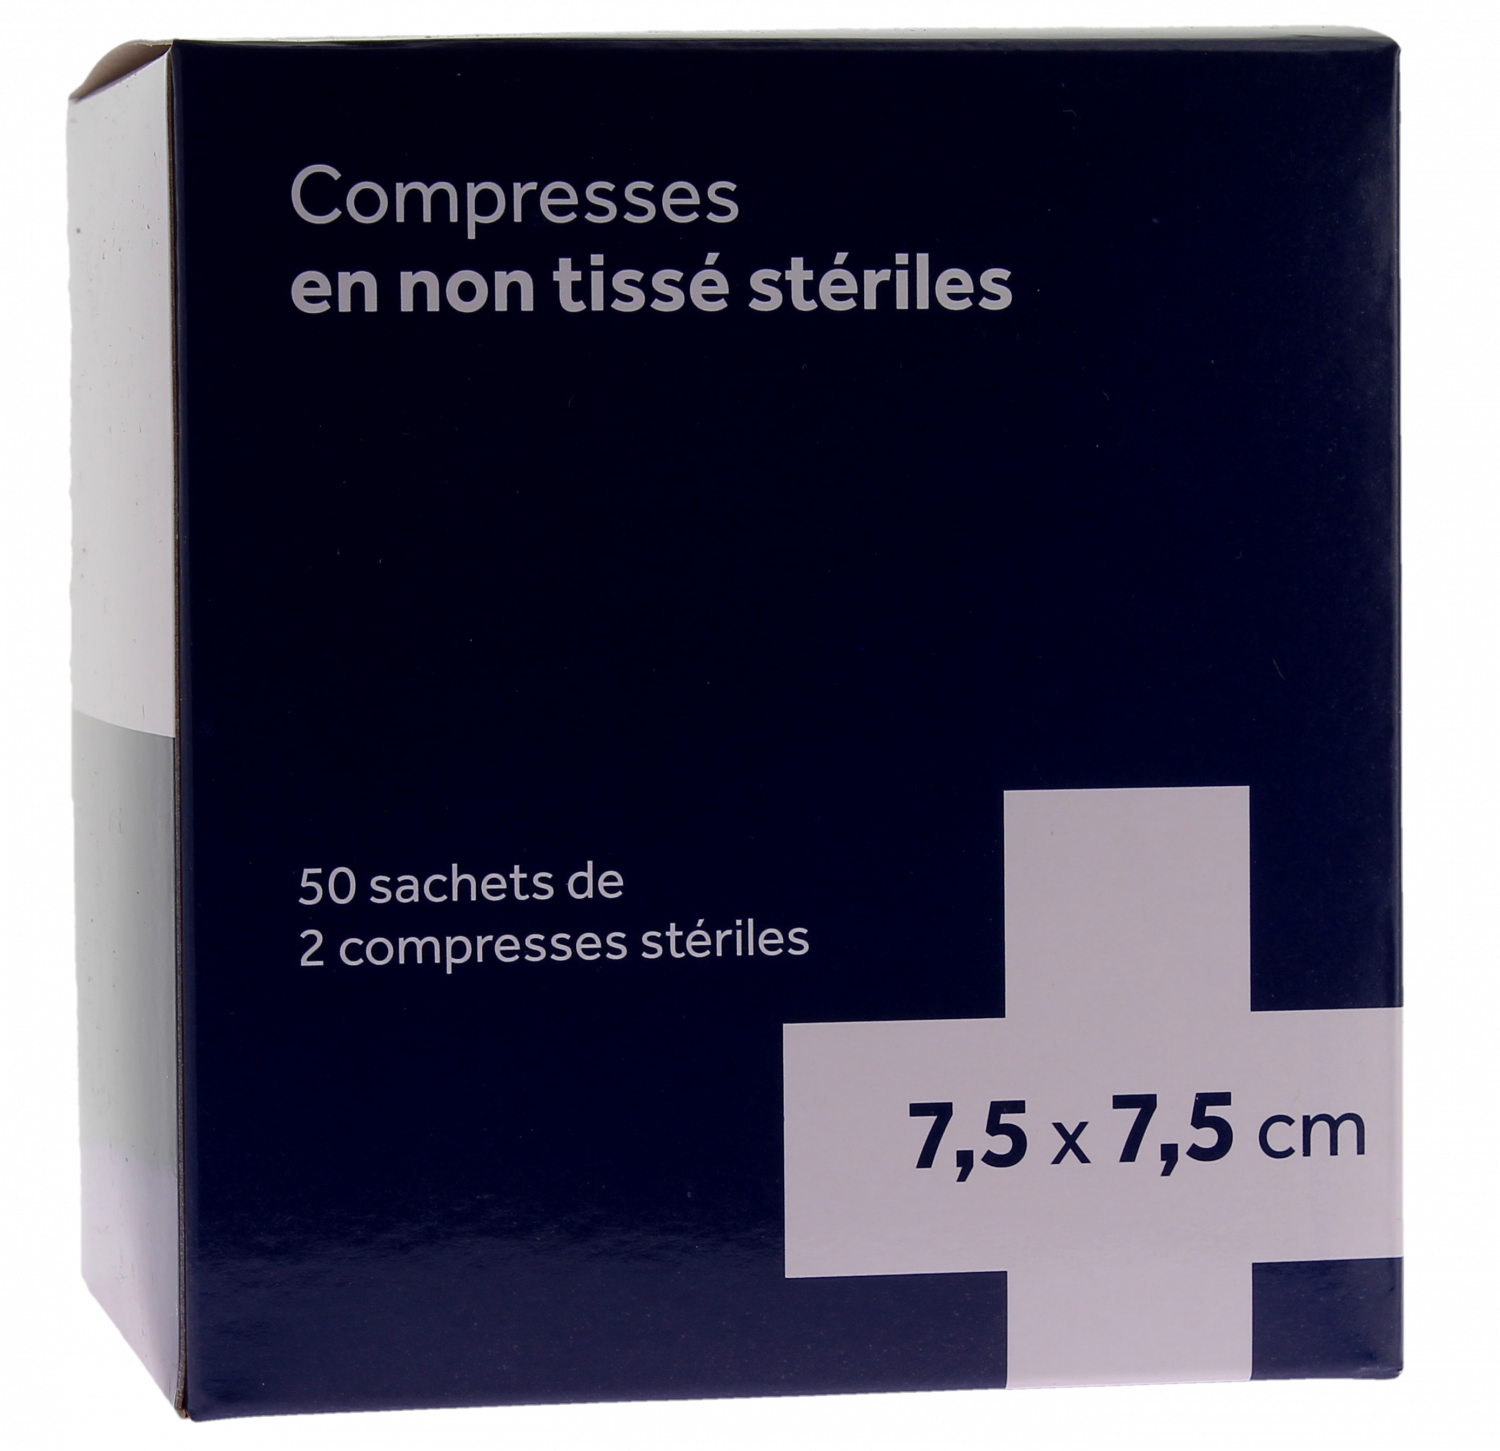 Compresses stériles non tissé 3M - 50 sachets de 2 compresses stériles de 7,5x7,5 cm